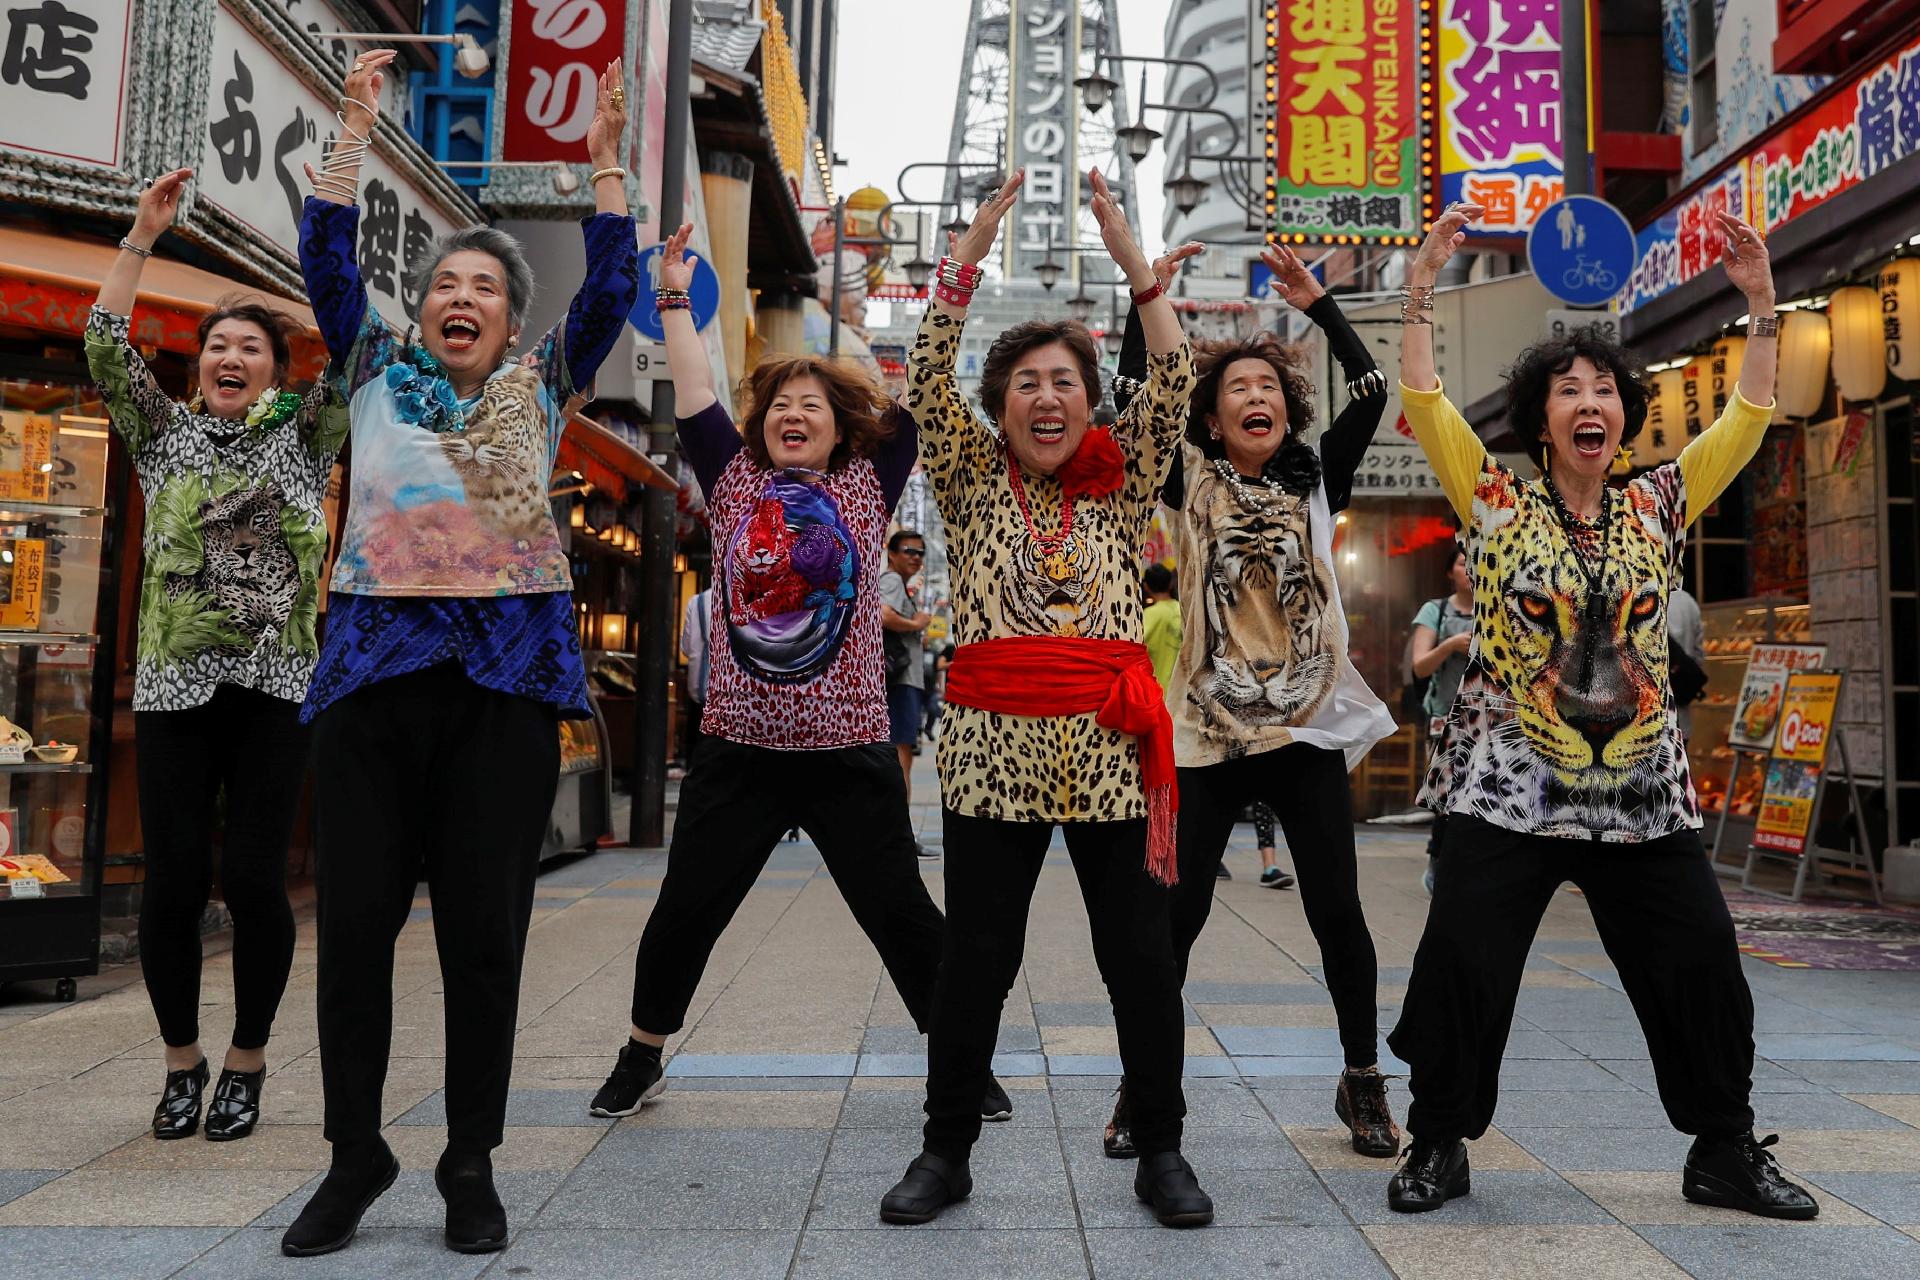 Vovozinhas Japonesas Lancam Video Com Funk De Boas Vindas Ao G20 Noticias Bol ¿openings de animes o canciones japonesas para una coreografia de xv anos? bol uol